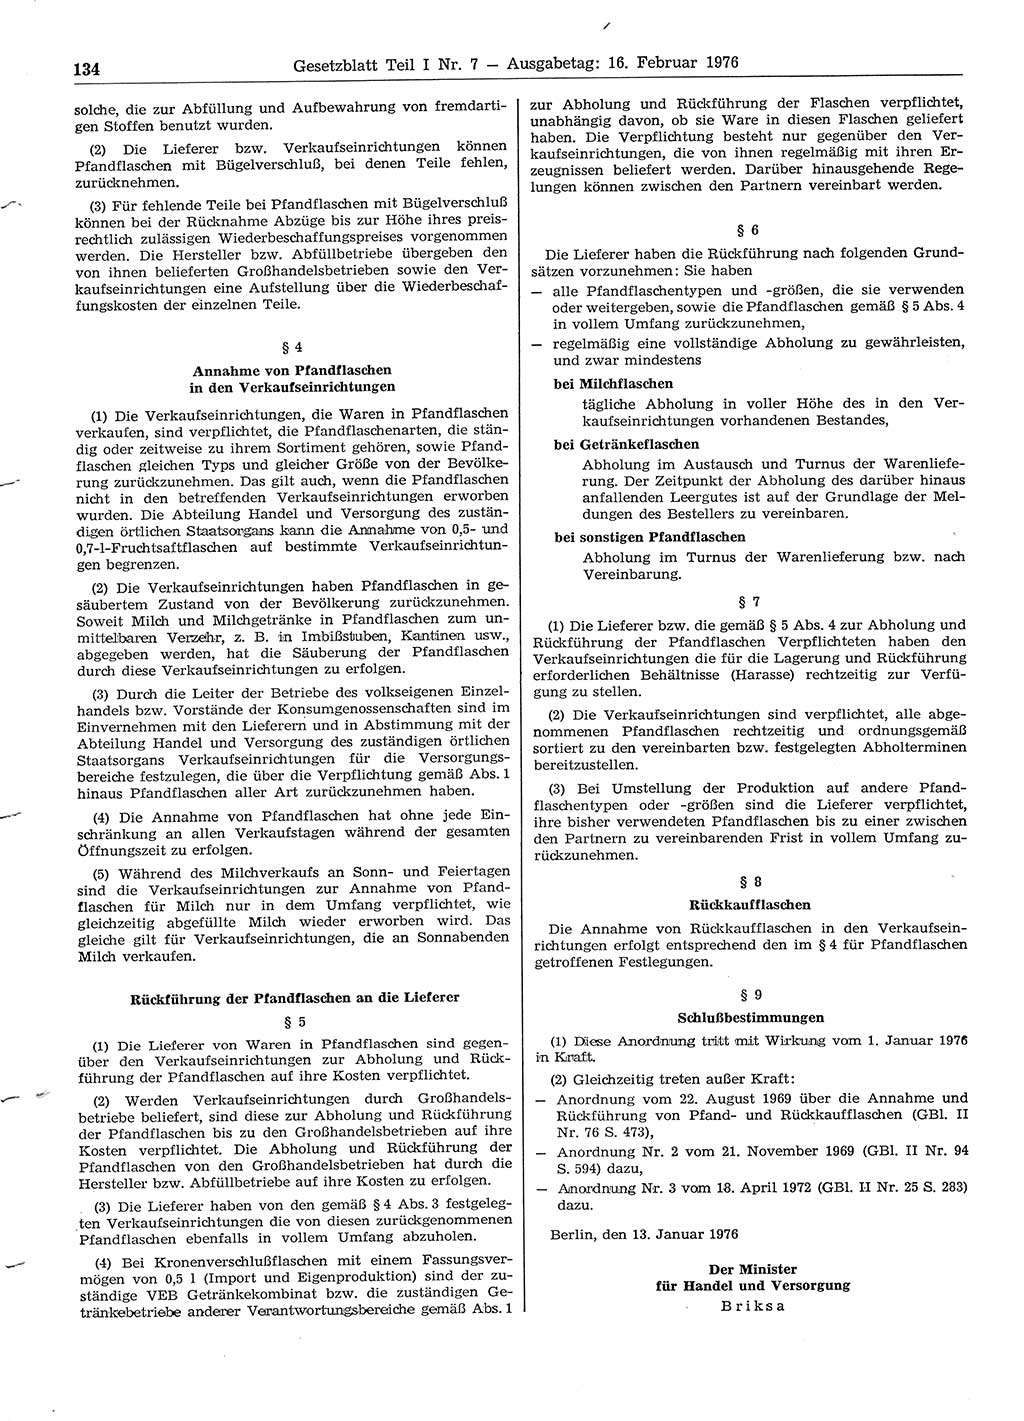 Gesetzblatt (GBl.) der Deutschen Demokratischen Republik (DDR) Teil Ⅰ 1976, Seite 134 (GBl. DDR Ⅰ 1976, S. 134)